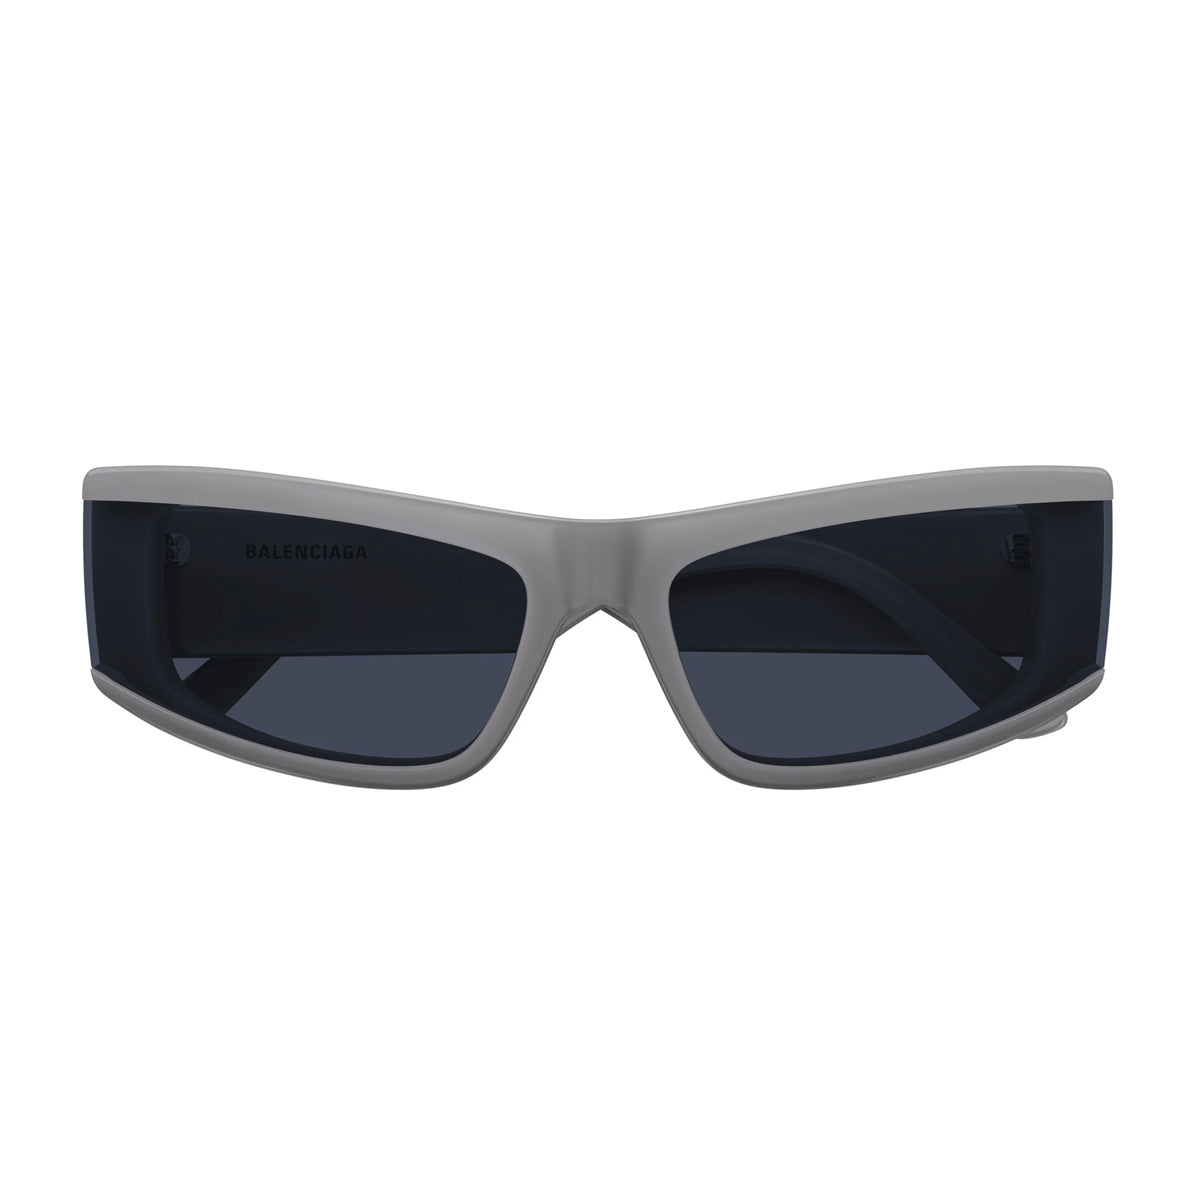 BB0301S 003-Occhiali da sole-Balenciaga-Balenciaga presenta la sua più recente collezione di occhiali da sole, caratterizzata da un'audace estetica contemporanea. Questa linea si contraddistingue per le forme oversize e le geometrie uniche, offrendo un'autentica dichiarazione di stile, perfetta per chi cerca un accessorio moderno e sofisticato per completare il proprio look. In particolare, il modello BB0301S presenta una montatura rettangolare stretta in acetato, con audaci volumi che si distinguono per la